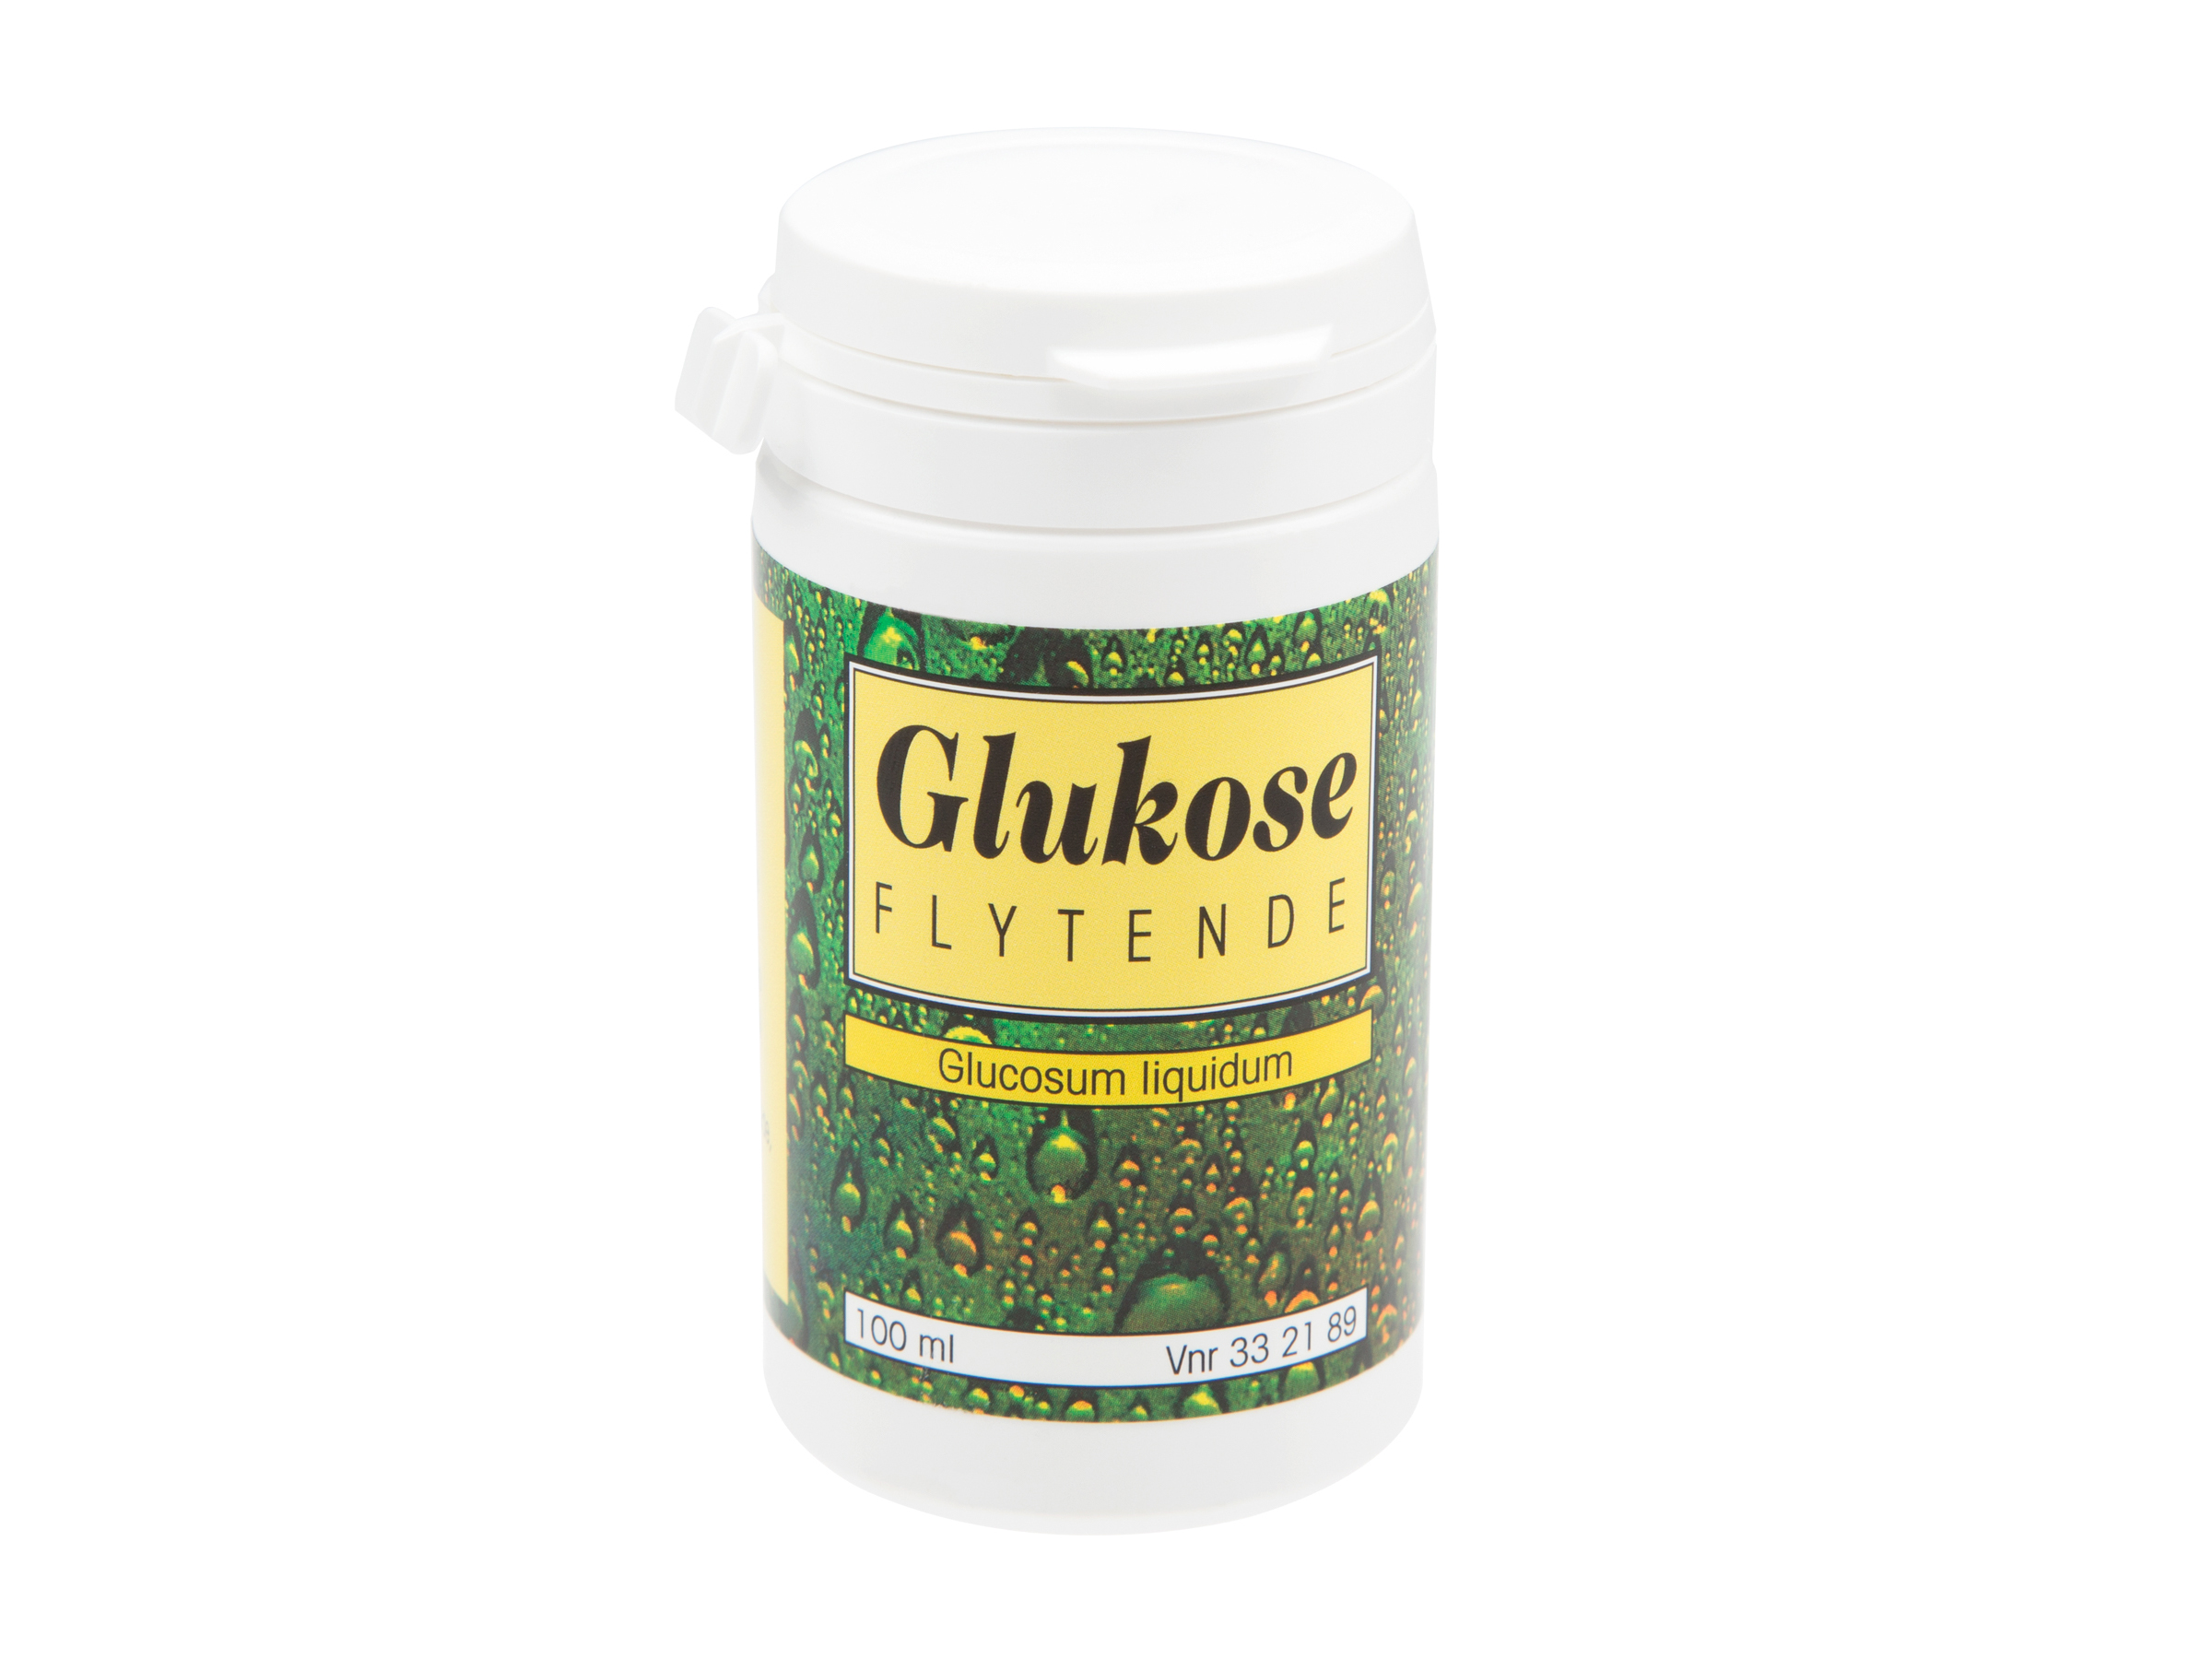 Glukose Flytende, 100 ml